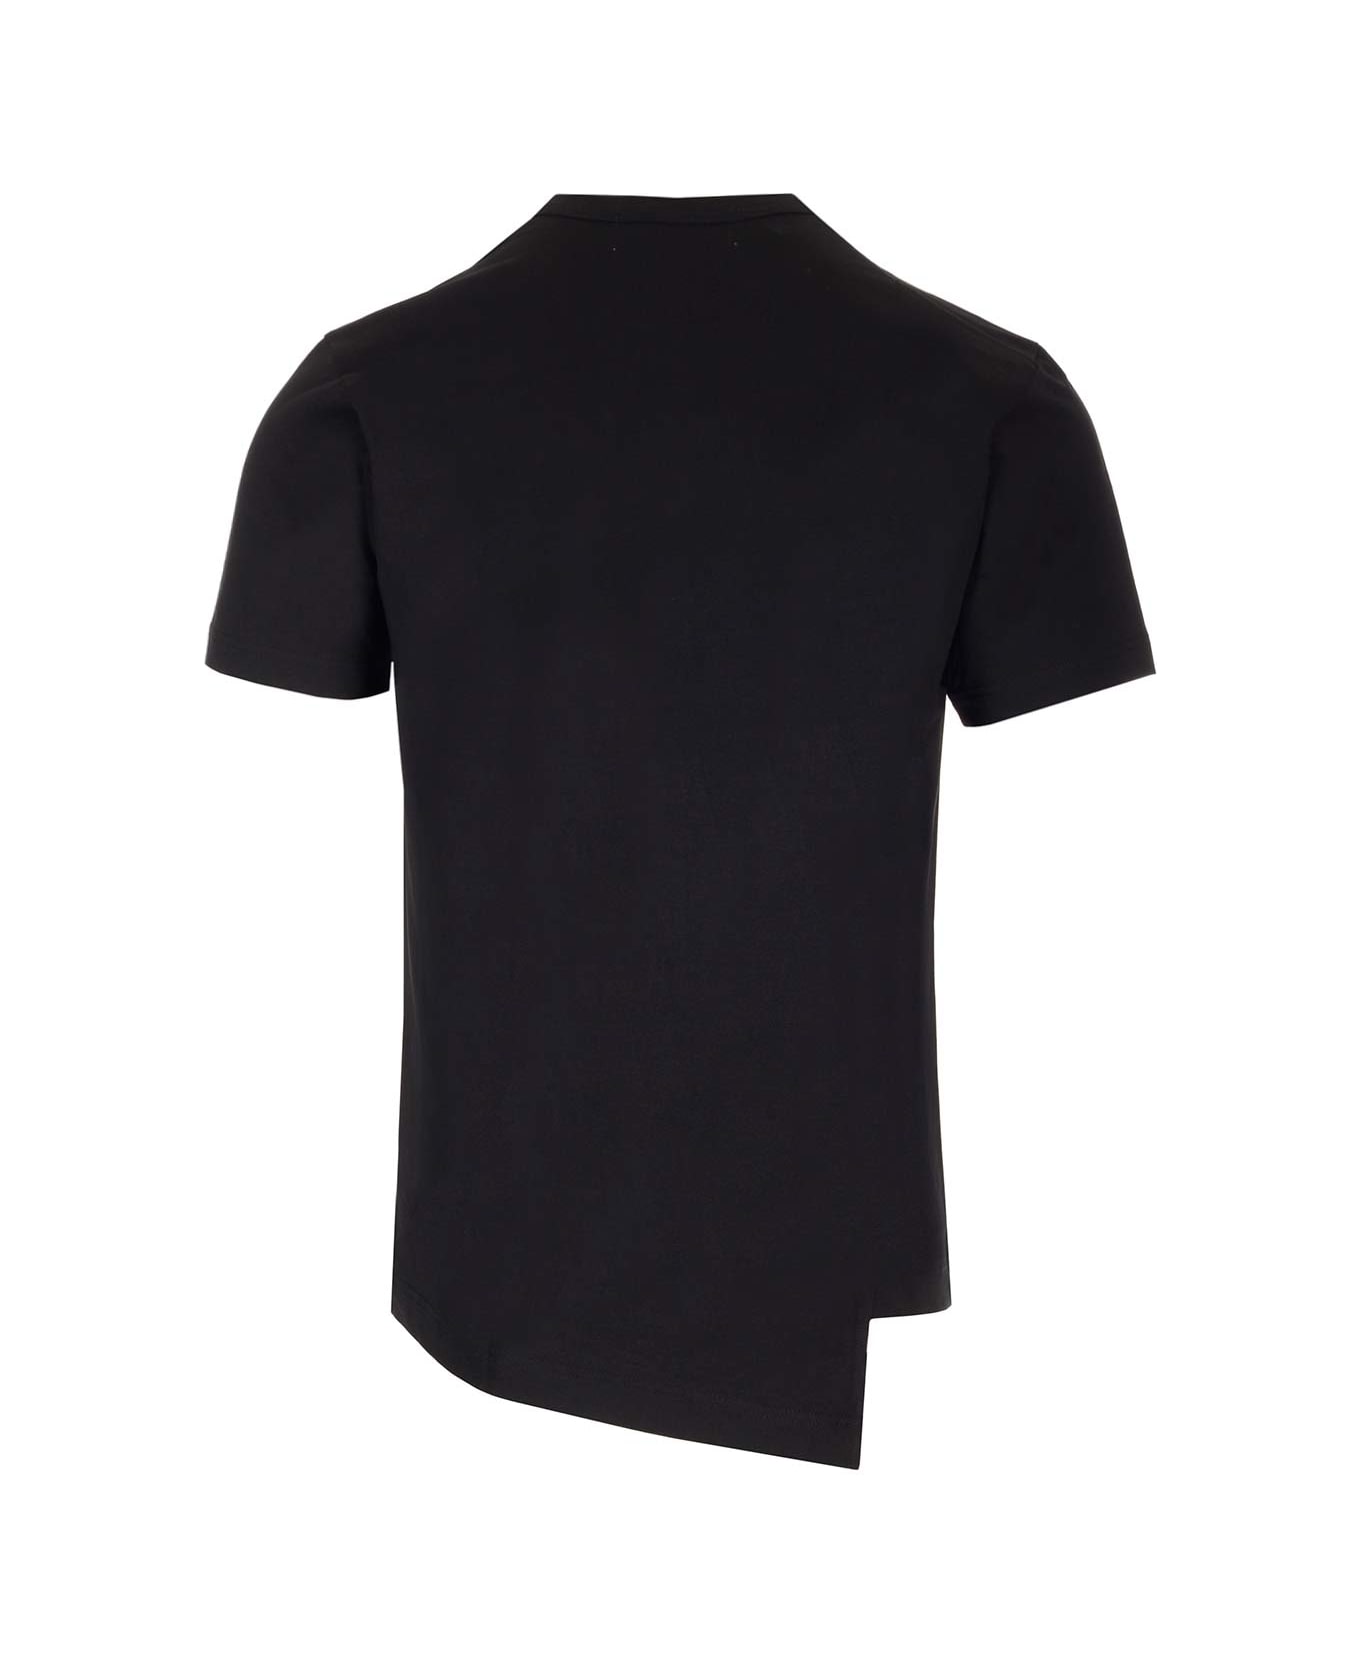 Comme des Garçons Shirt Black Asymmetric T-shirt X La Coste - Black シャツ